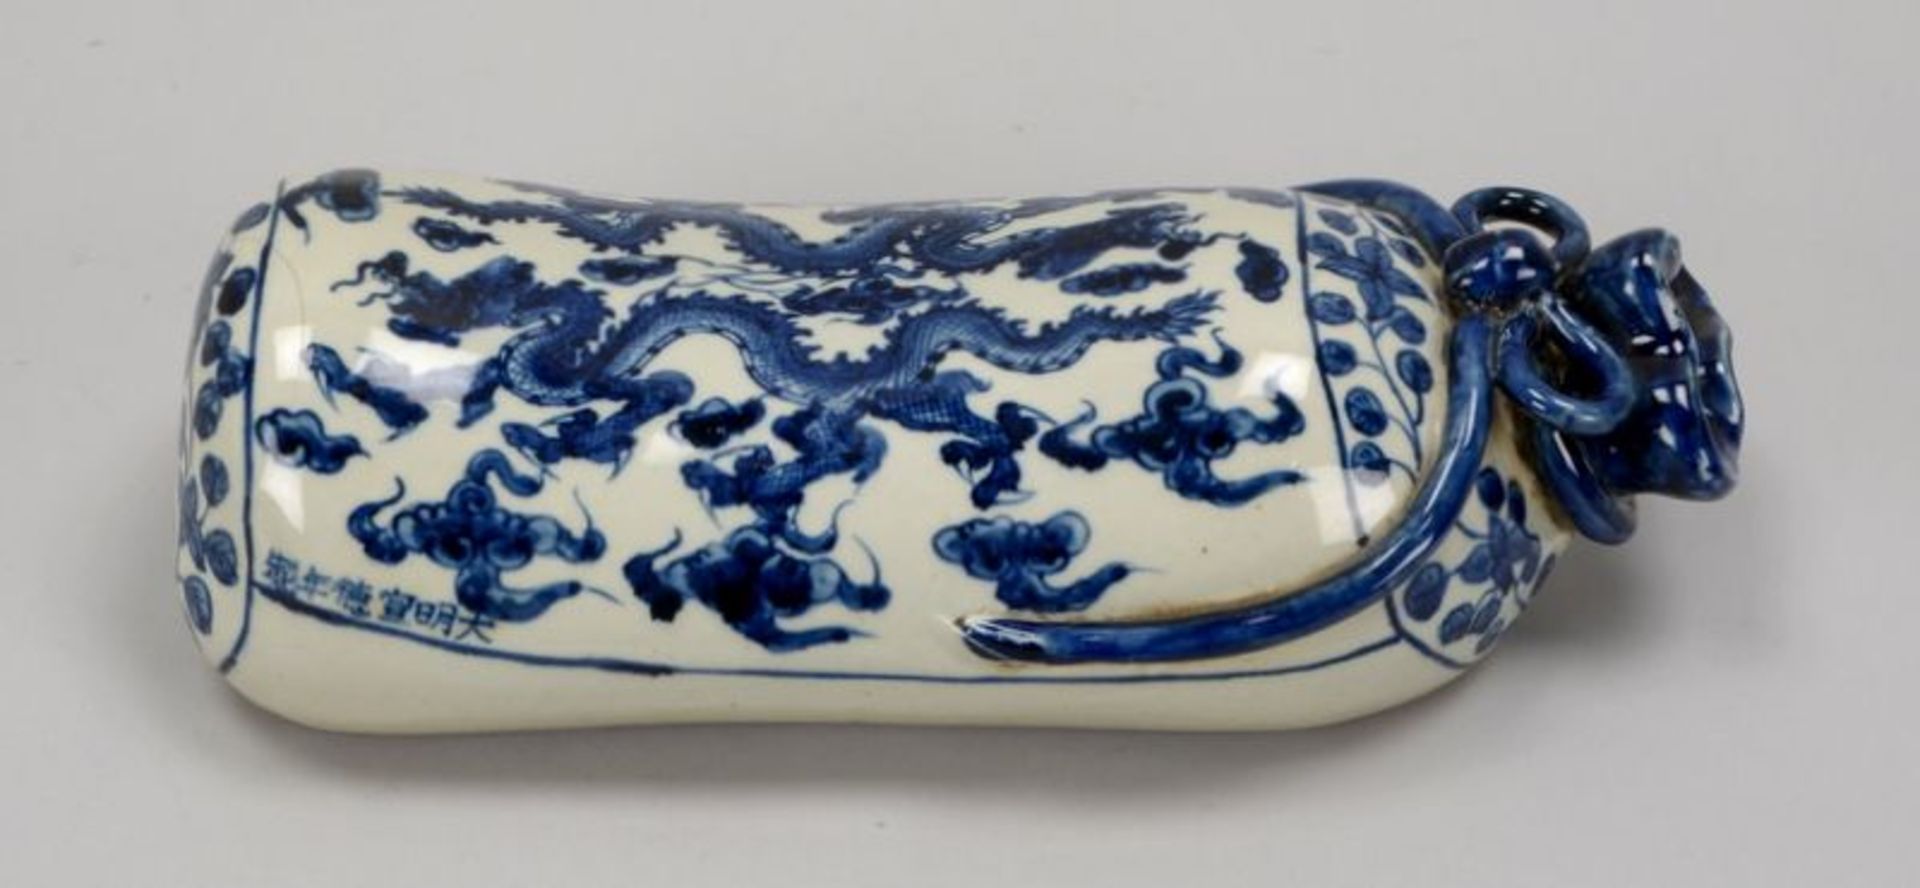 Nackenst&uuml;tze (China), Porzellan, partiell durchbrochen, mit Unterglasurmalerei (Drachenmotive);